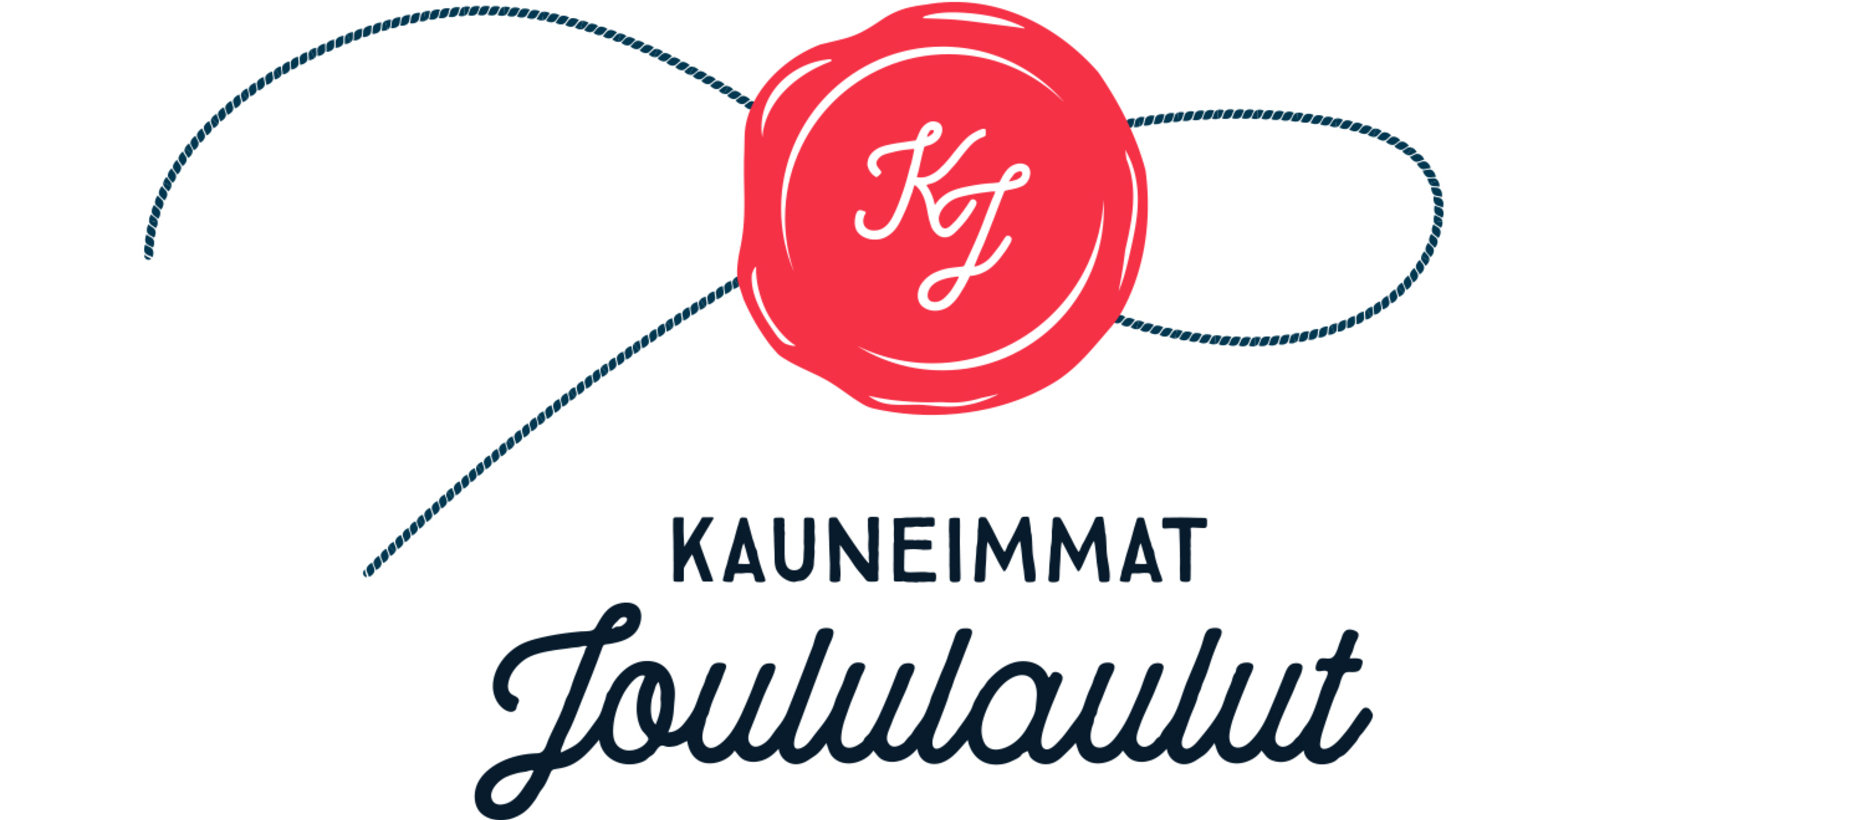 Kauneimmat joululaulut logo 2017_XL.jpg